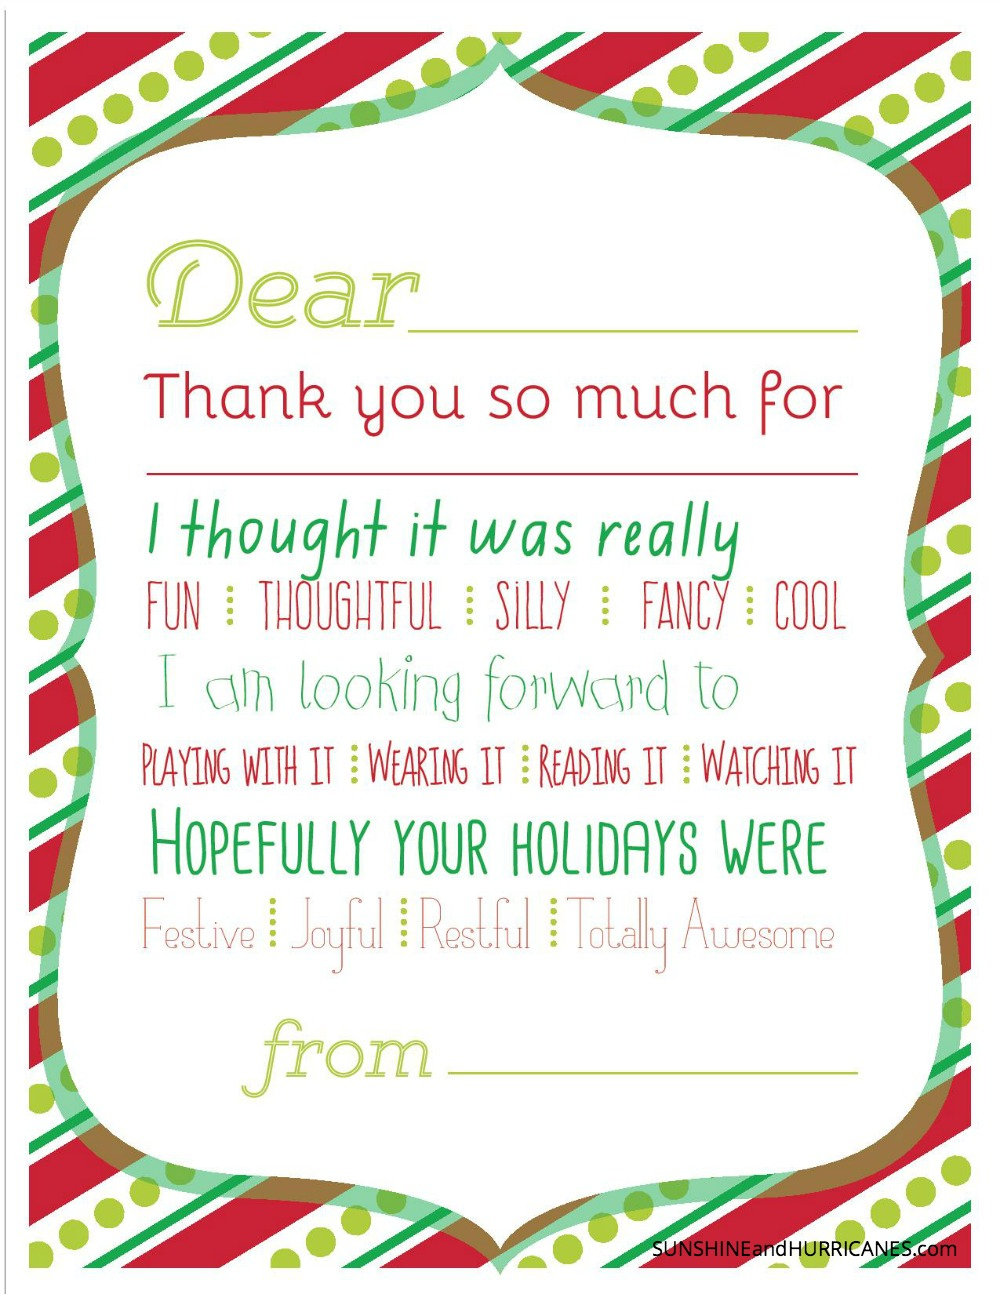 Christmas Printable Thank You Cards For Kids - Fill In The Blank Thank You Cards Printable Free